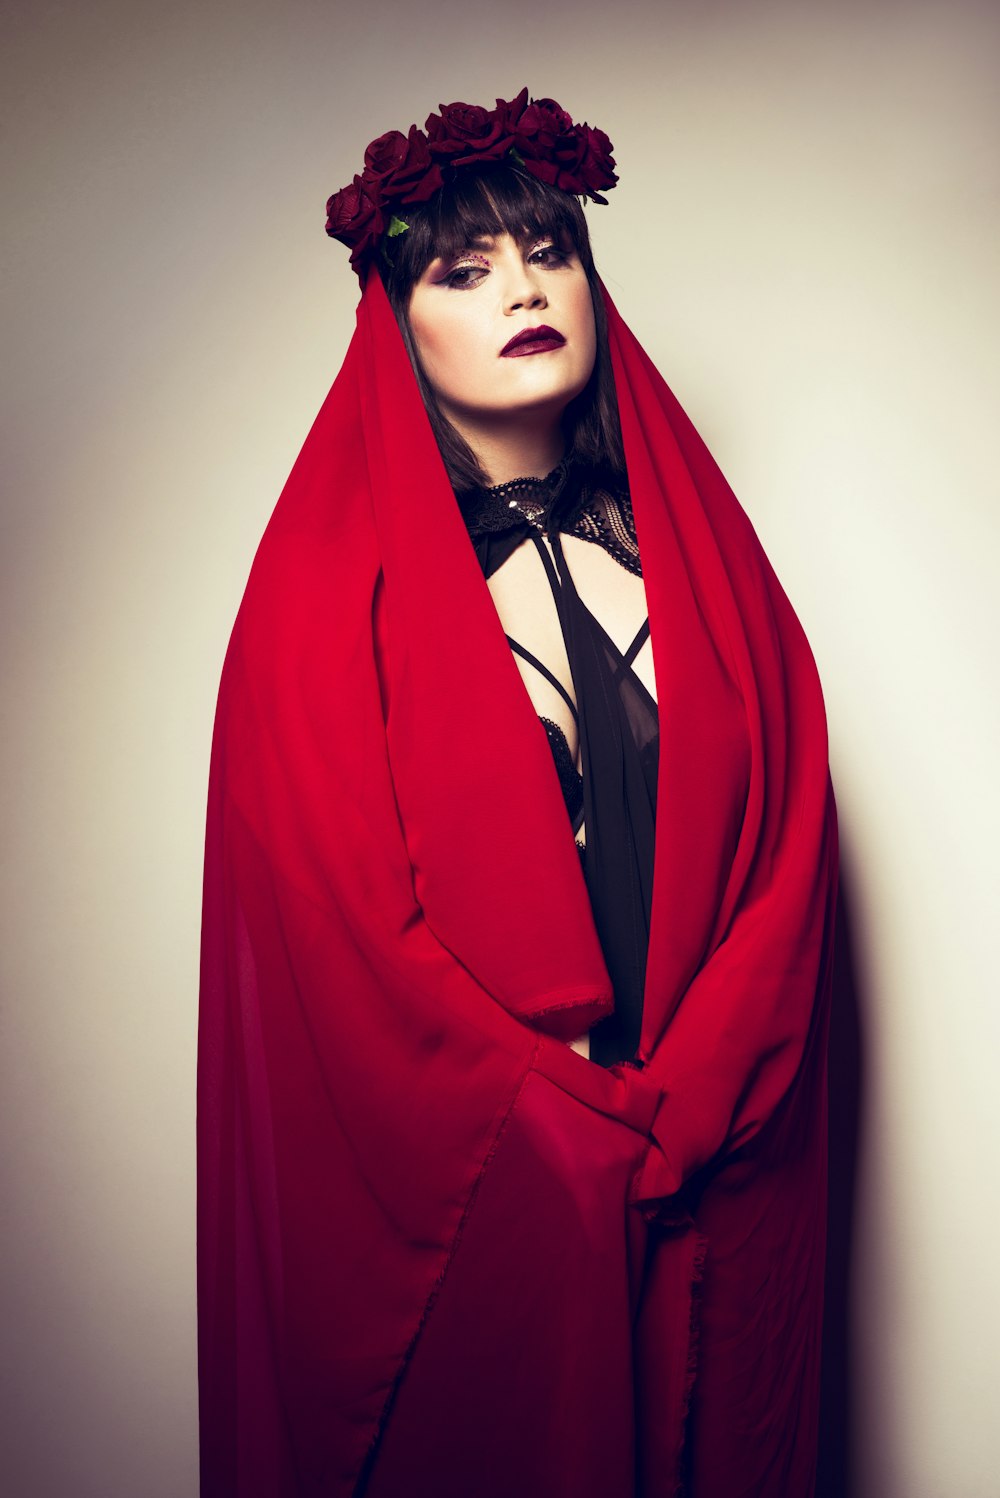 Frau im roten Mantel mit schwarz-weißem Polka Dot Hijab